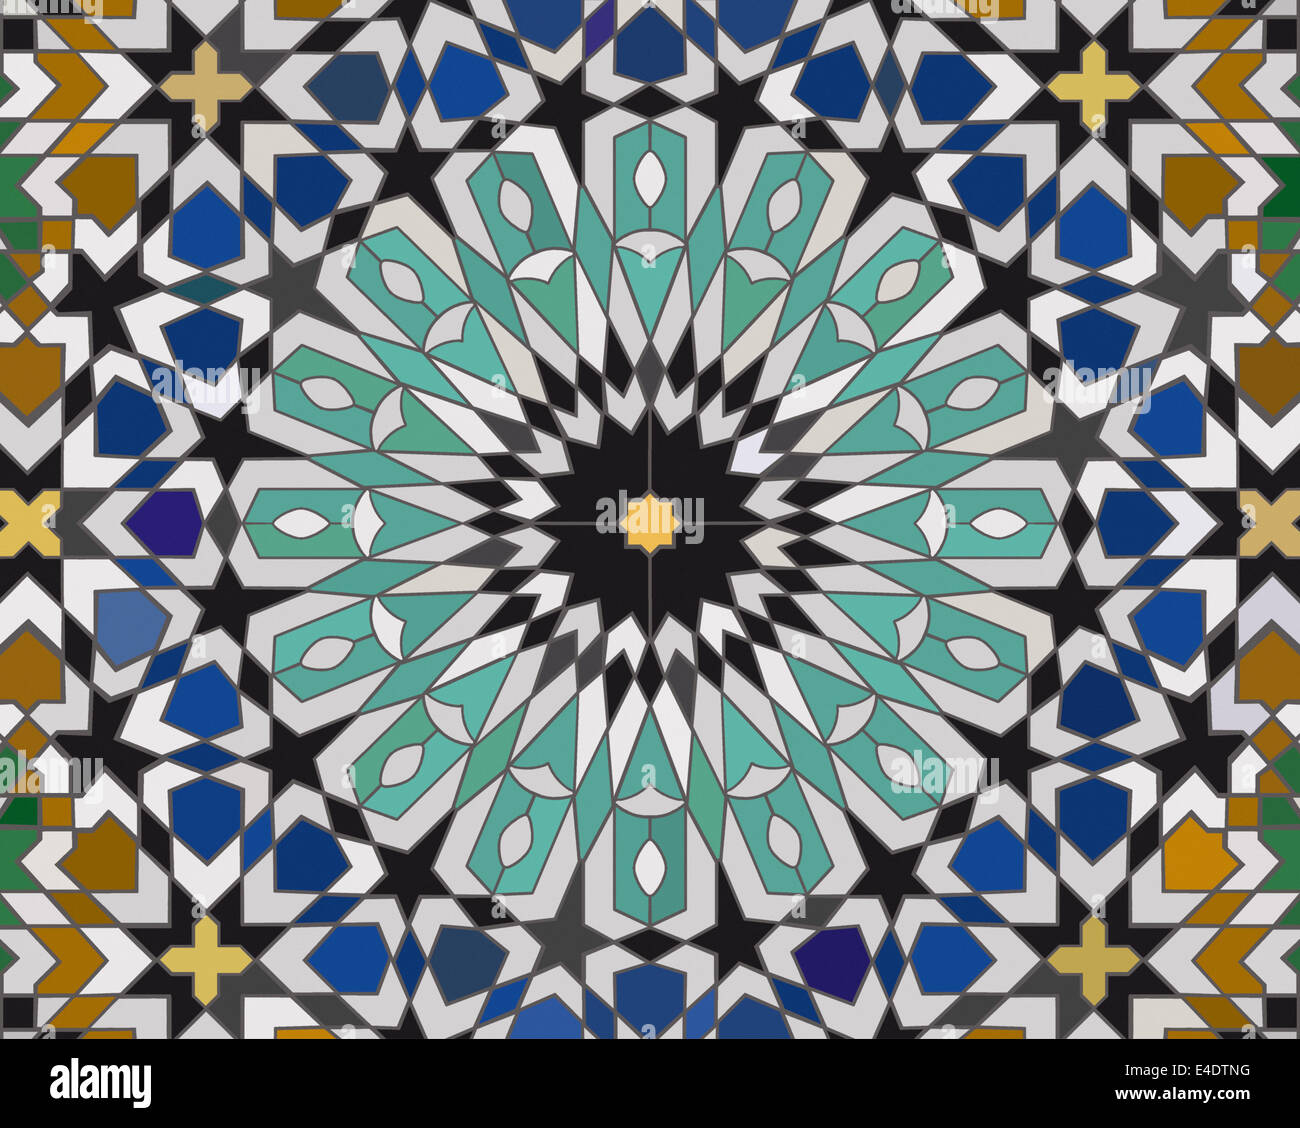 Bereich gemacht Mosaikfliesen basierend auf einem marokkanischen Design mit komplexen wiederholendes Muster mit Sterne und kreisförmige Motive Stockfoto